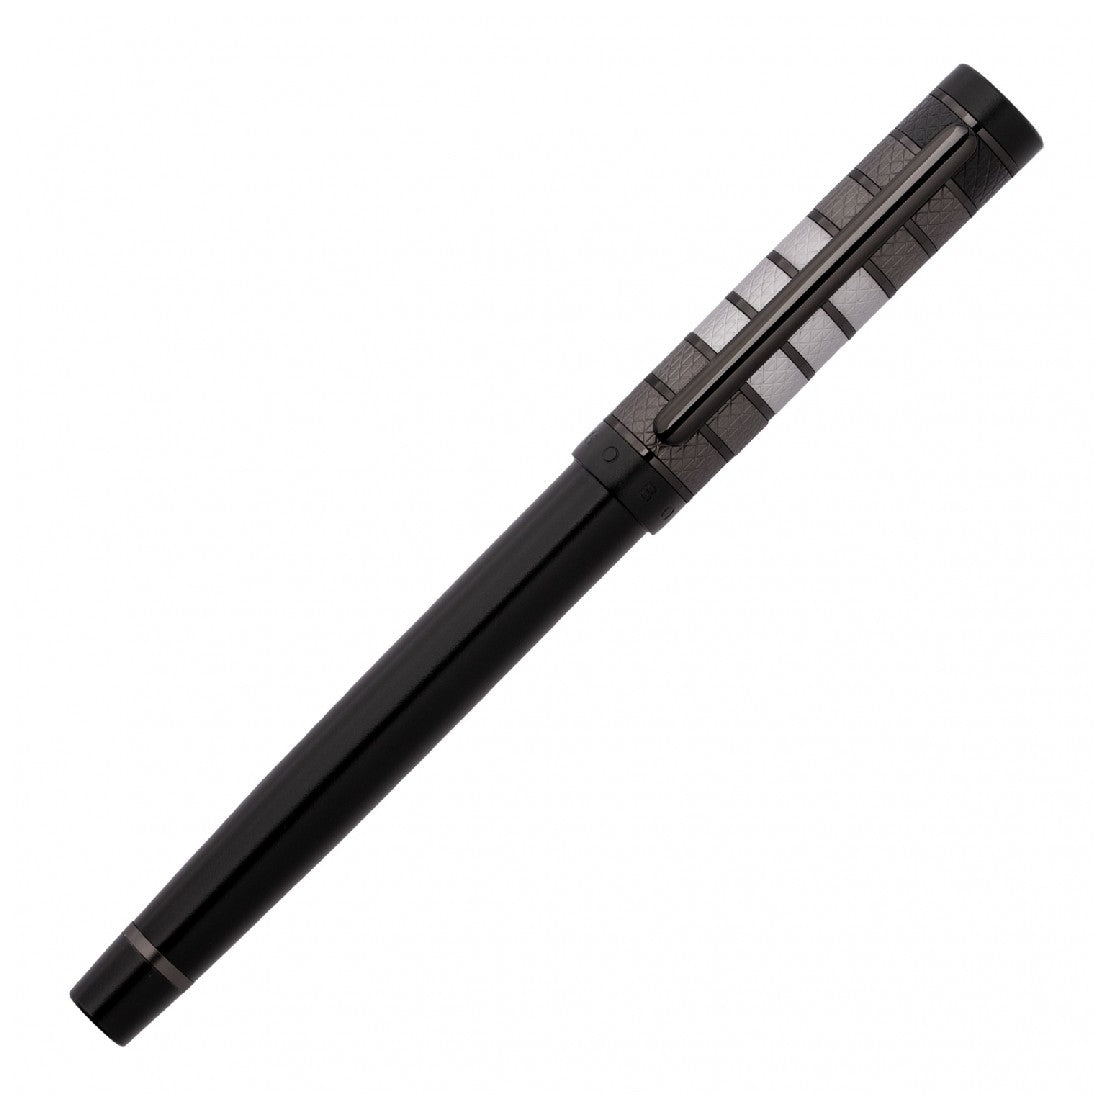 Hugo Boss Black Pen - HBPEN-0021